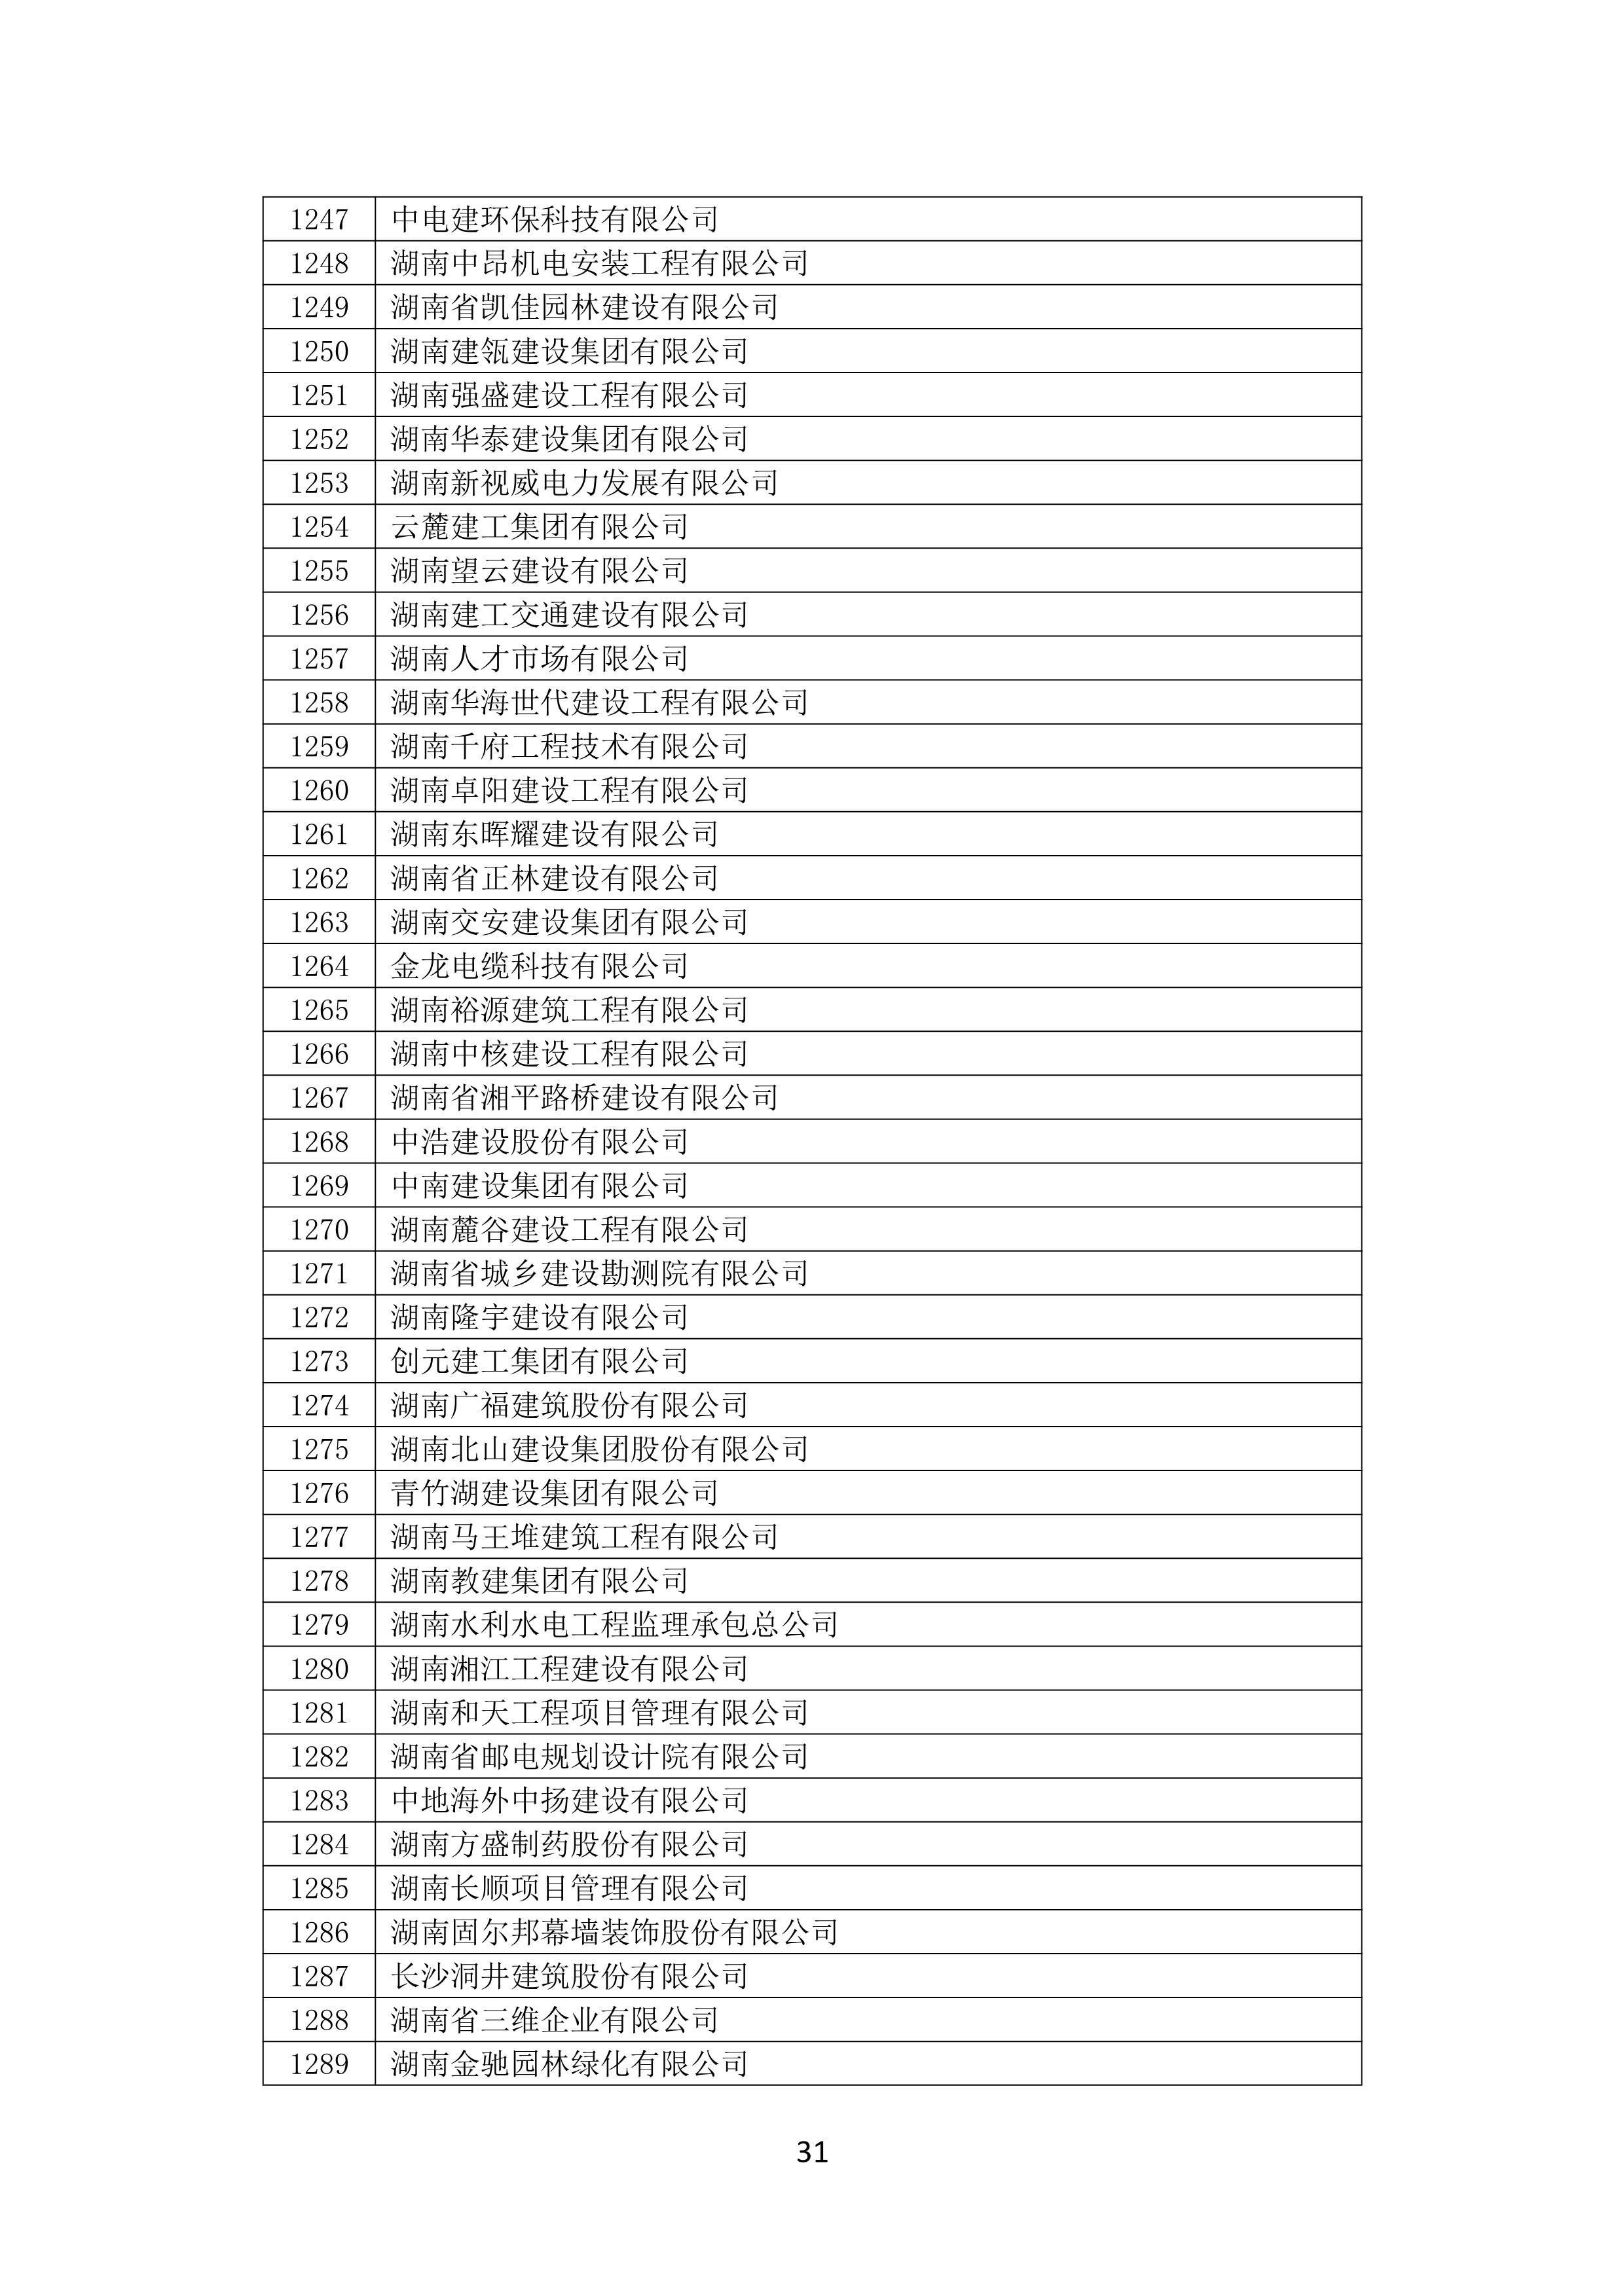 2021 年(nián)度湖南省守合同重信用企業名單_32.png